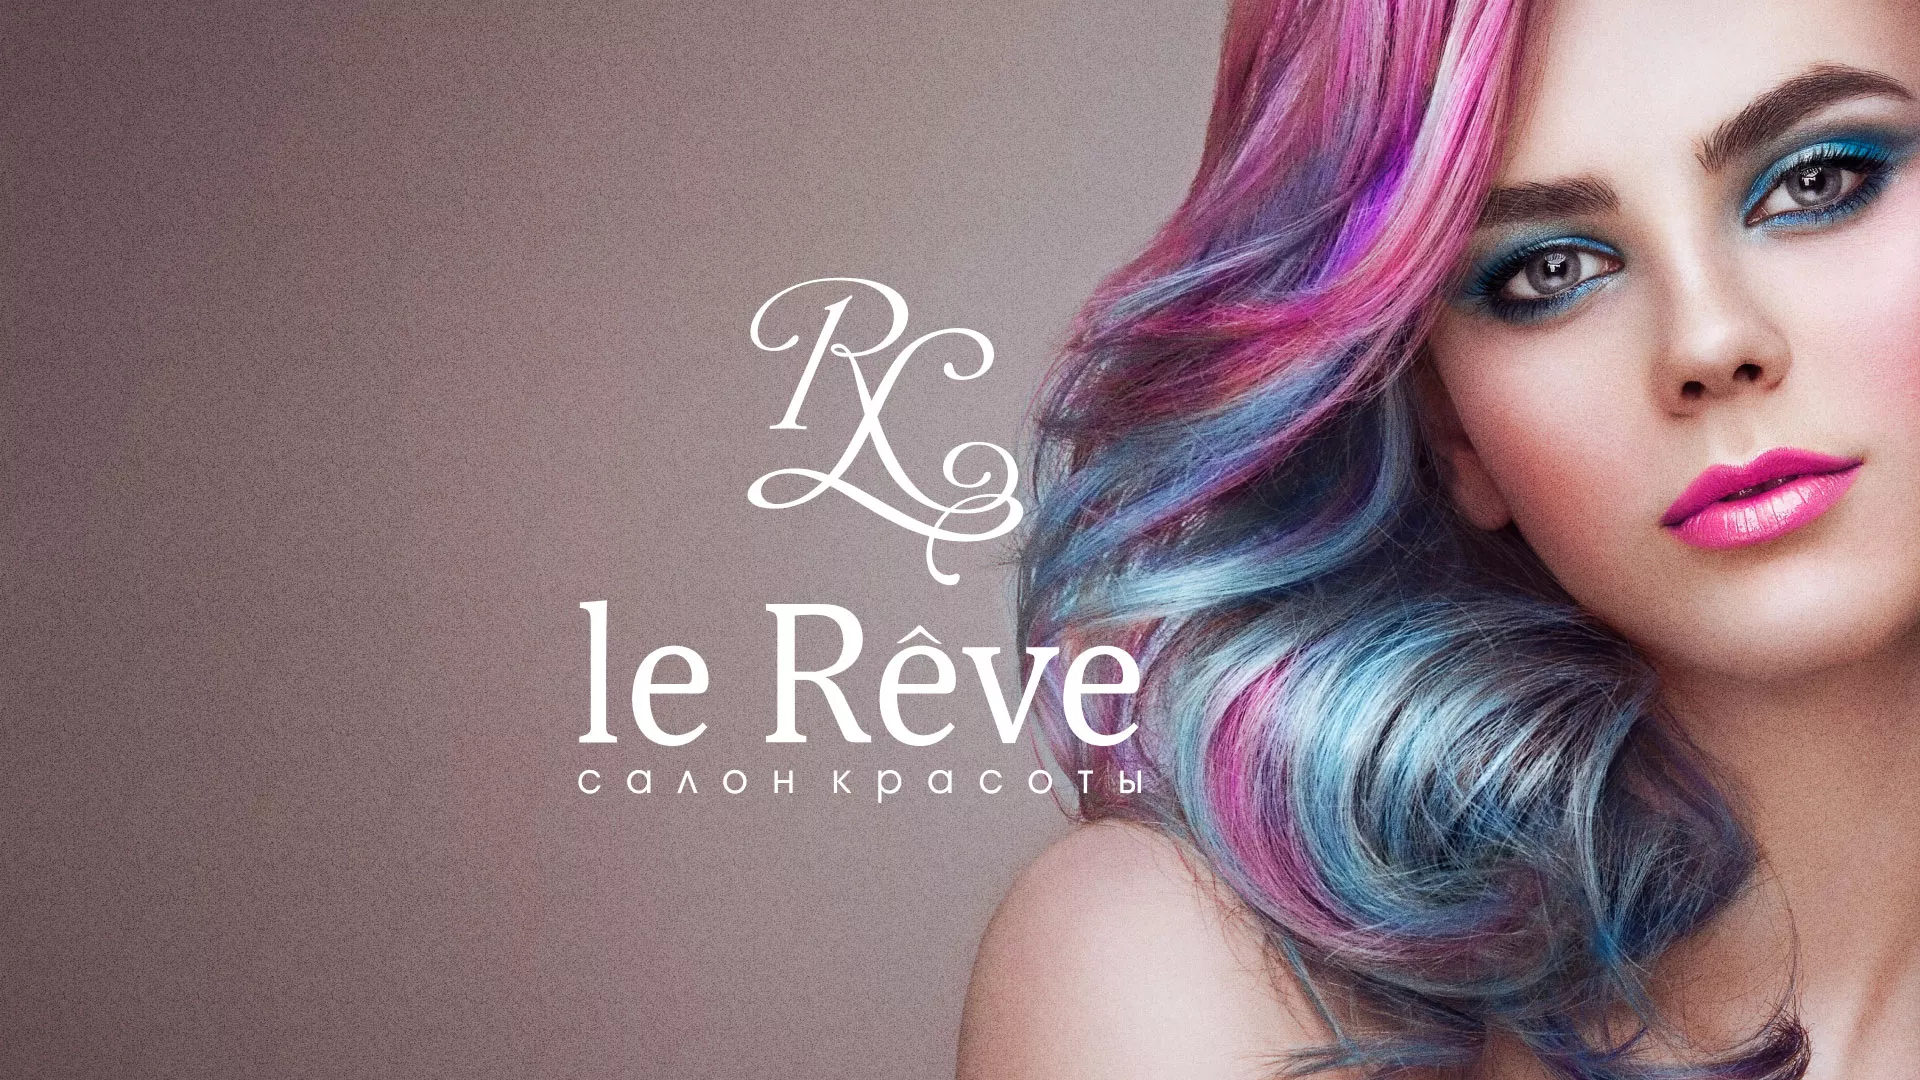 Создание сайта для салона красоты «Le Reve» в Саратове